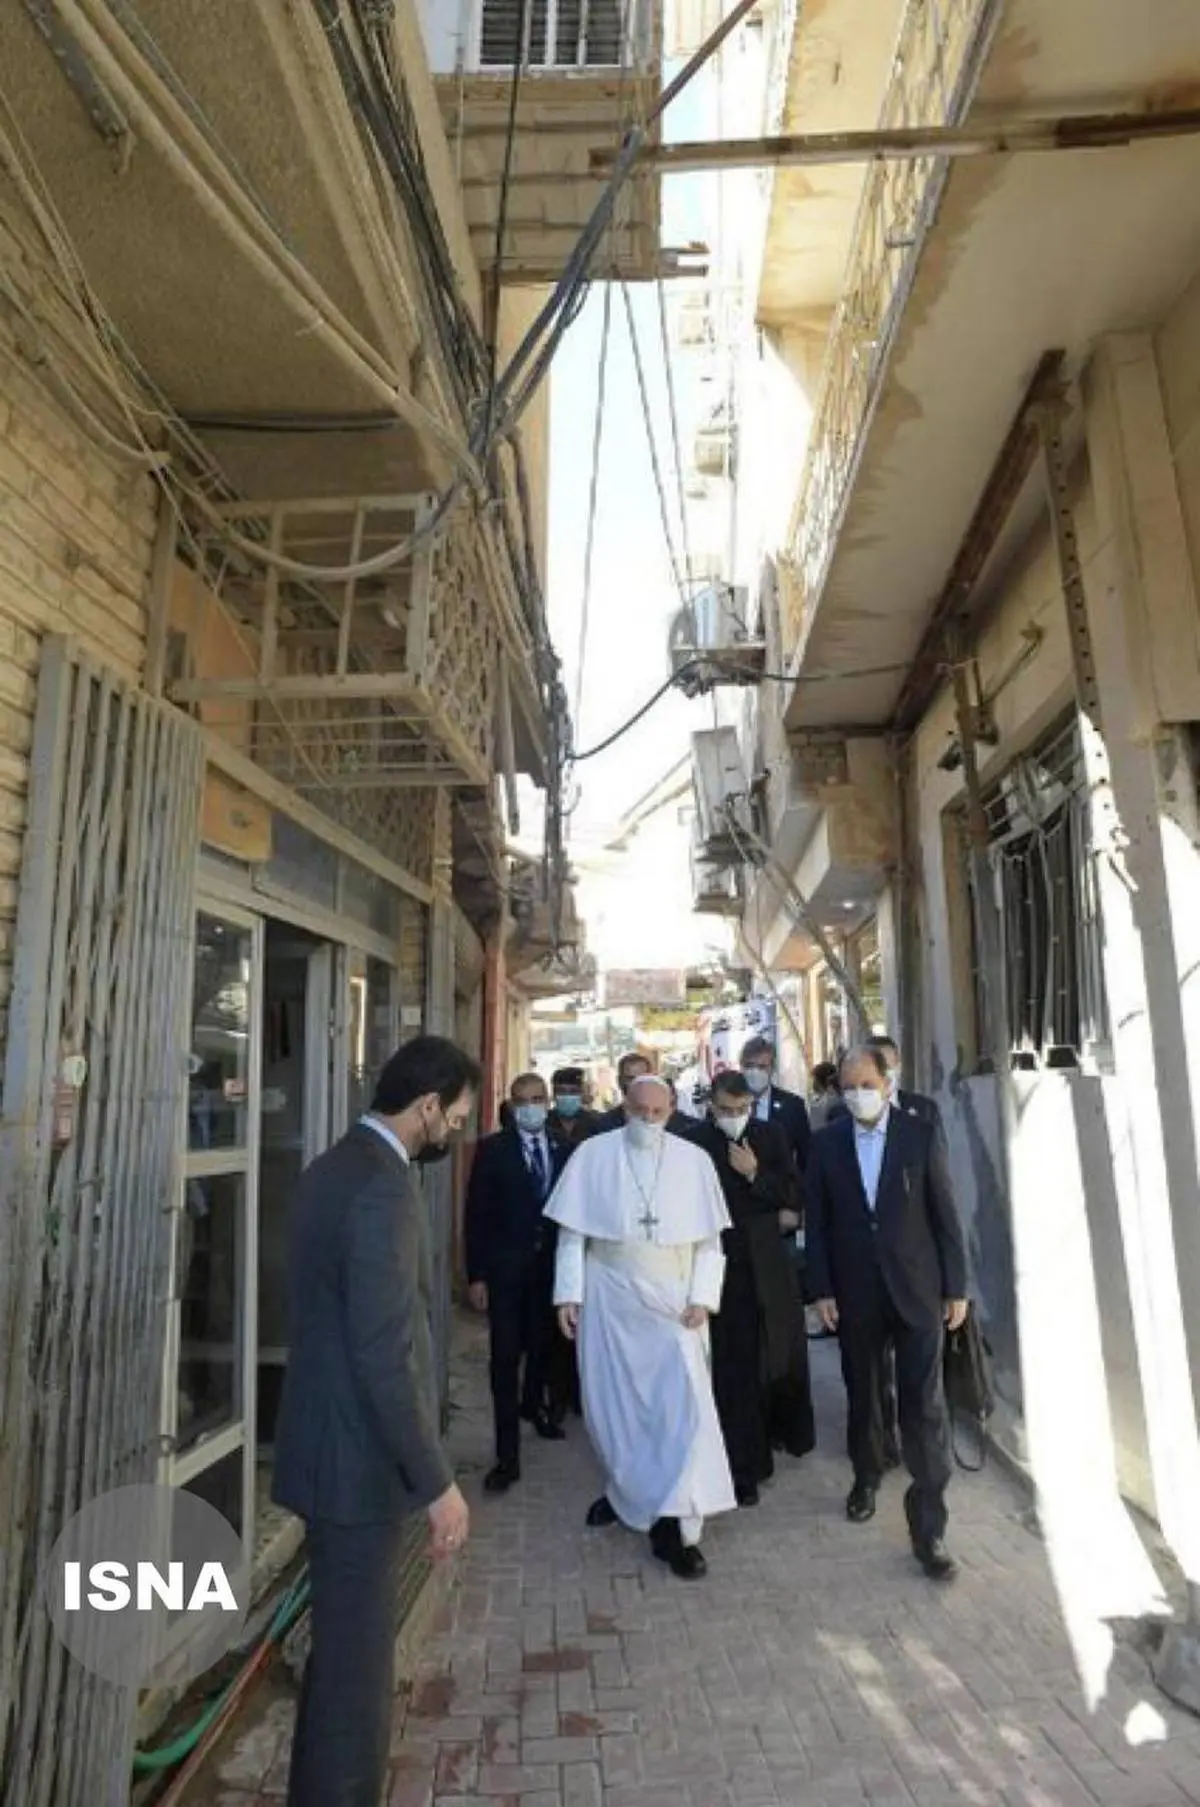  حضور پاپ در کوچه فرعی خیابان الرسول (ص) در ضلع جنوبی حرم حضرت علی (ع)